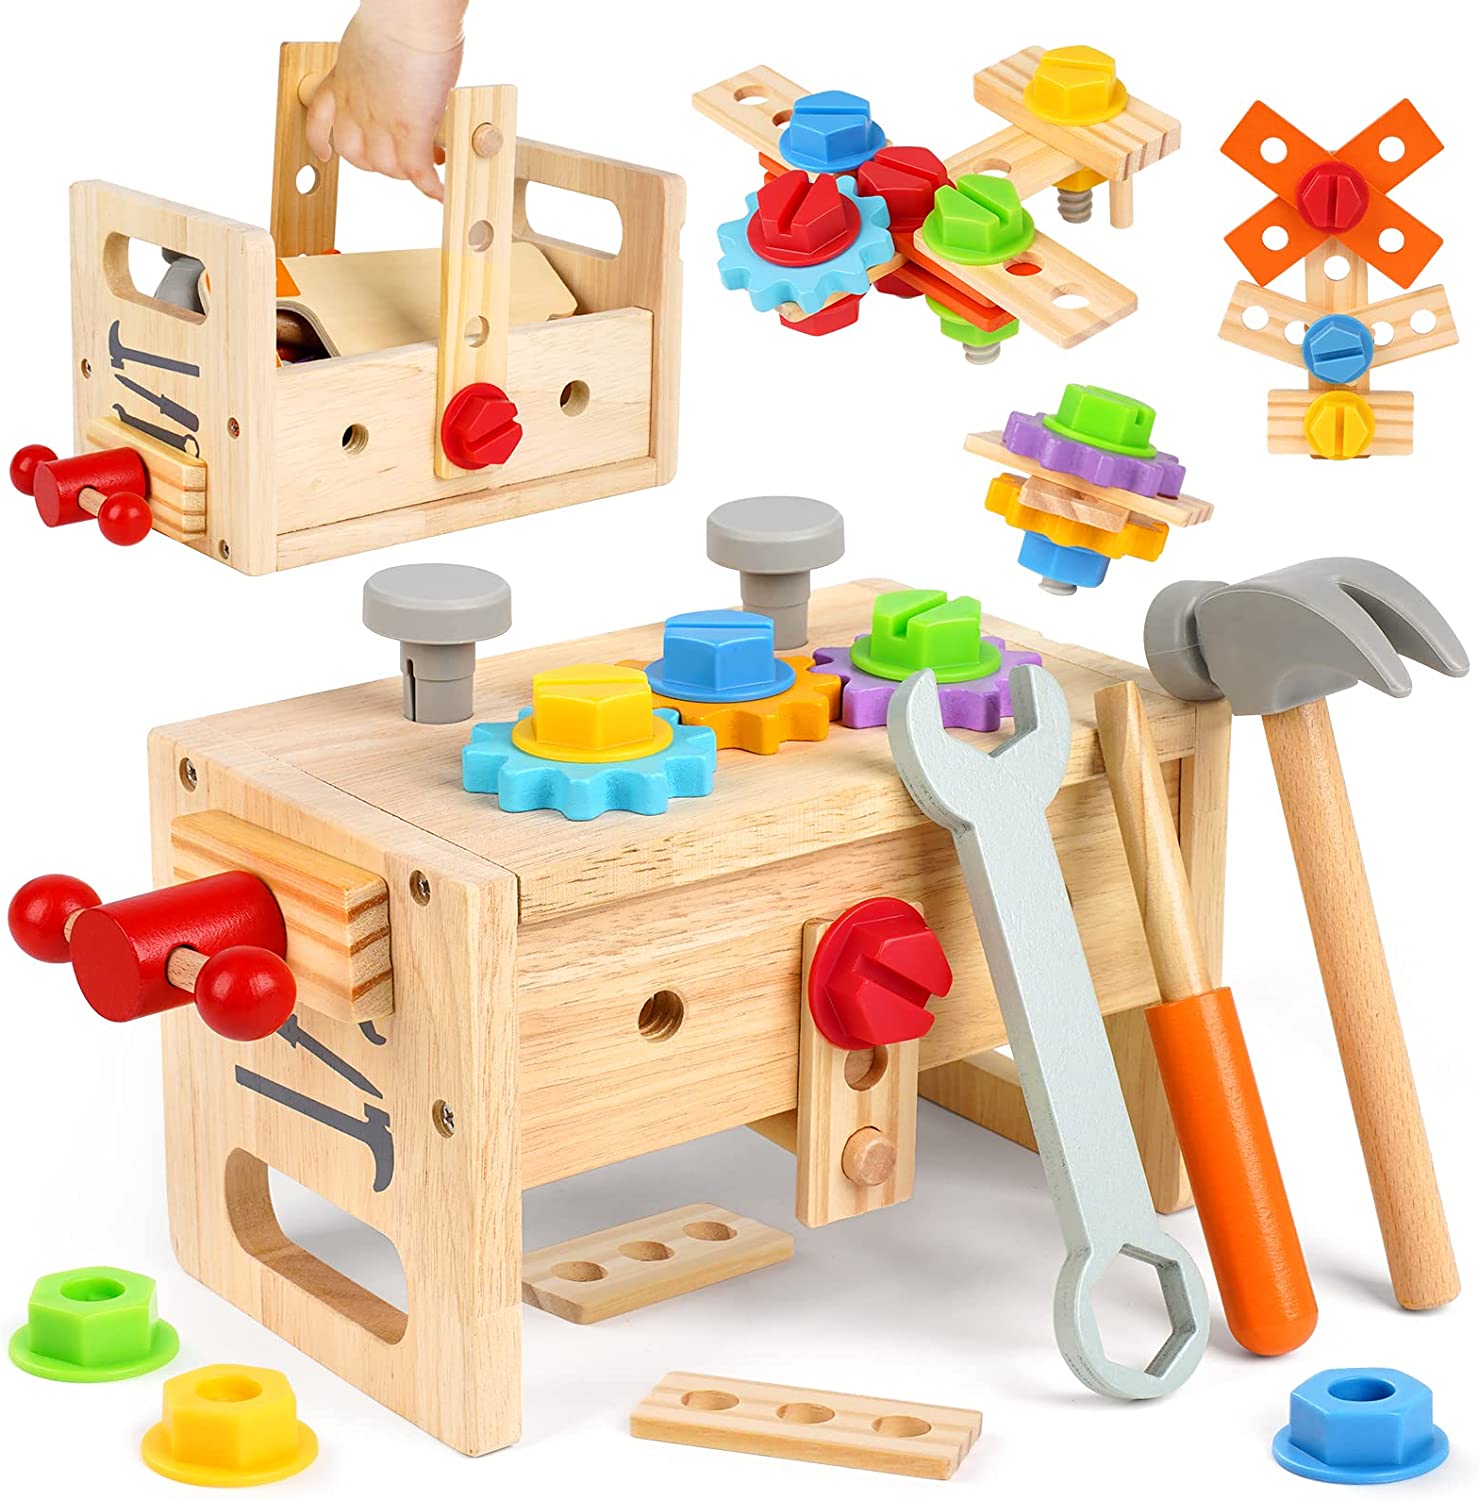 2023 夏 ins ファション小物   高級 おもちゃ 知育玩具 積み木 収納 木のおもちゃ ランキング